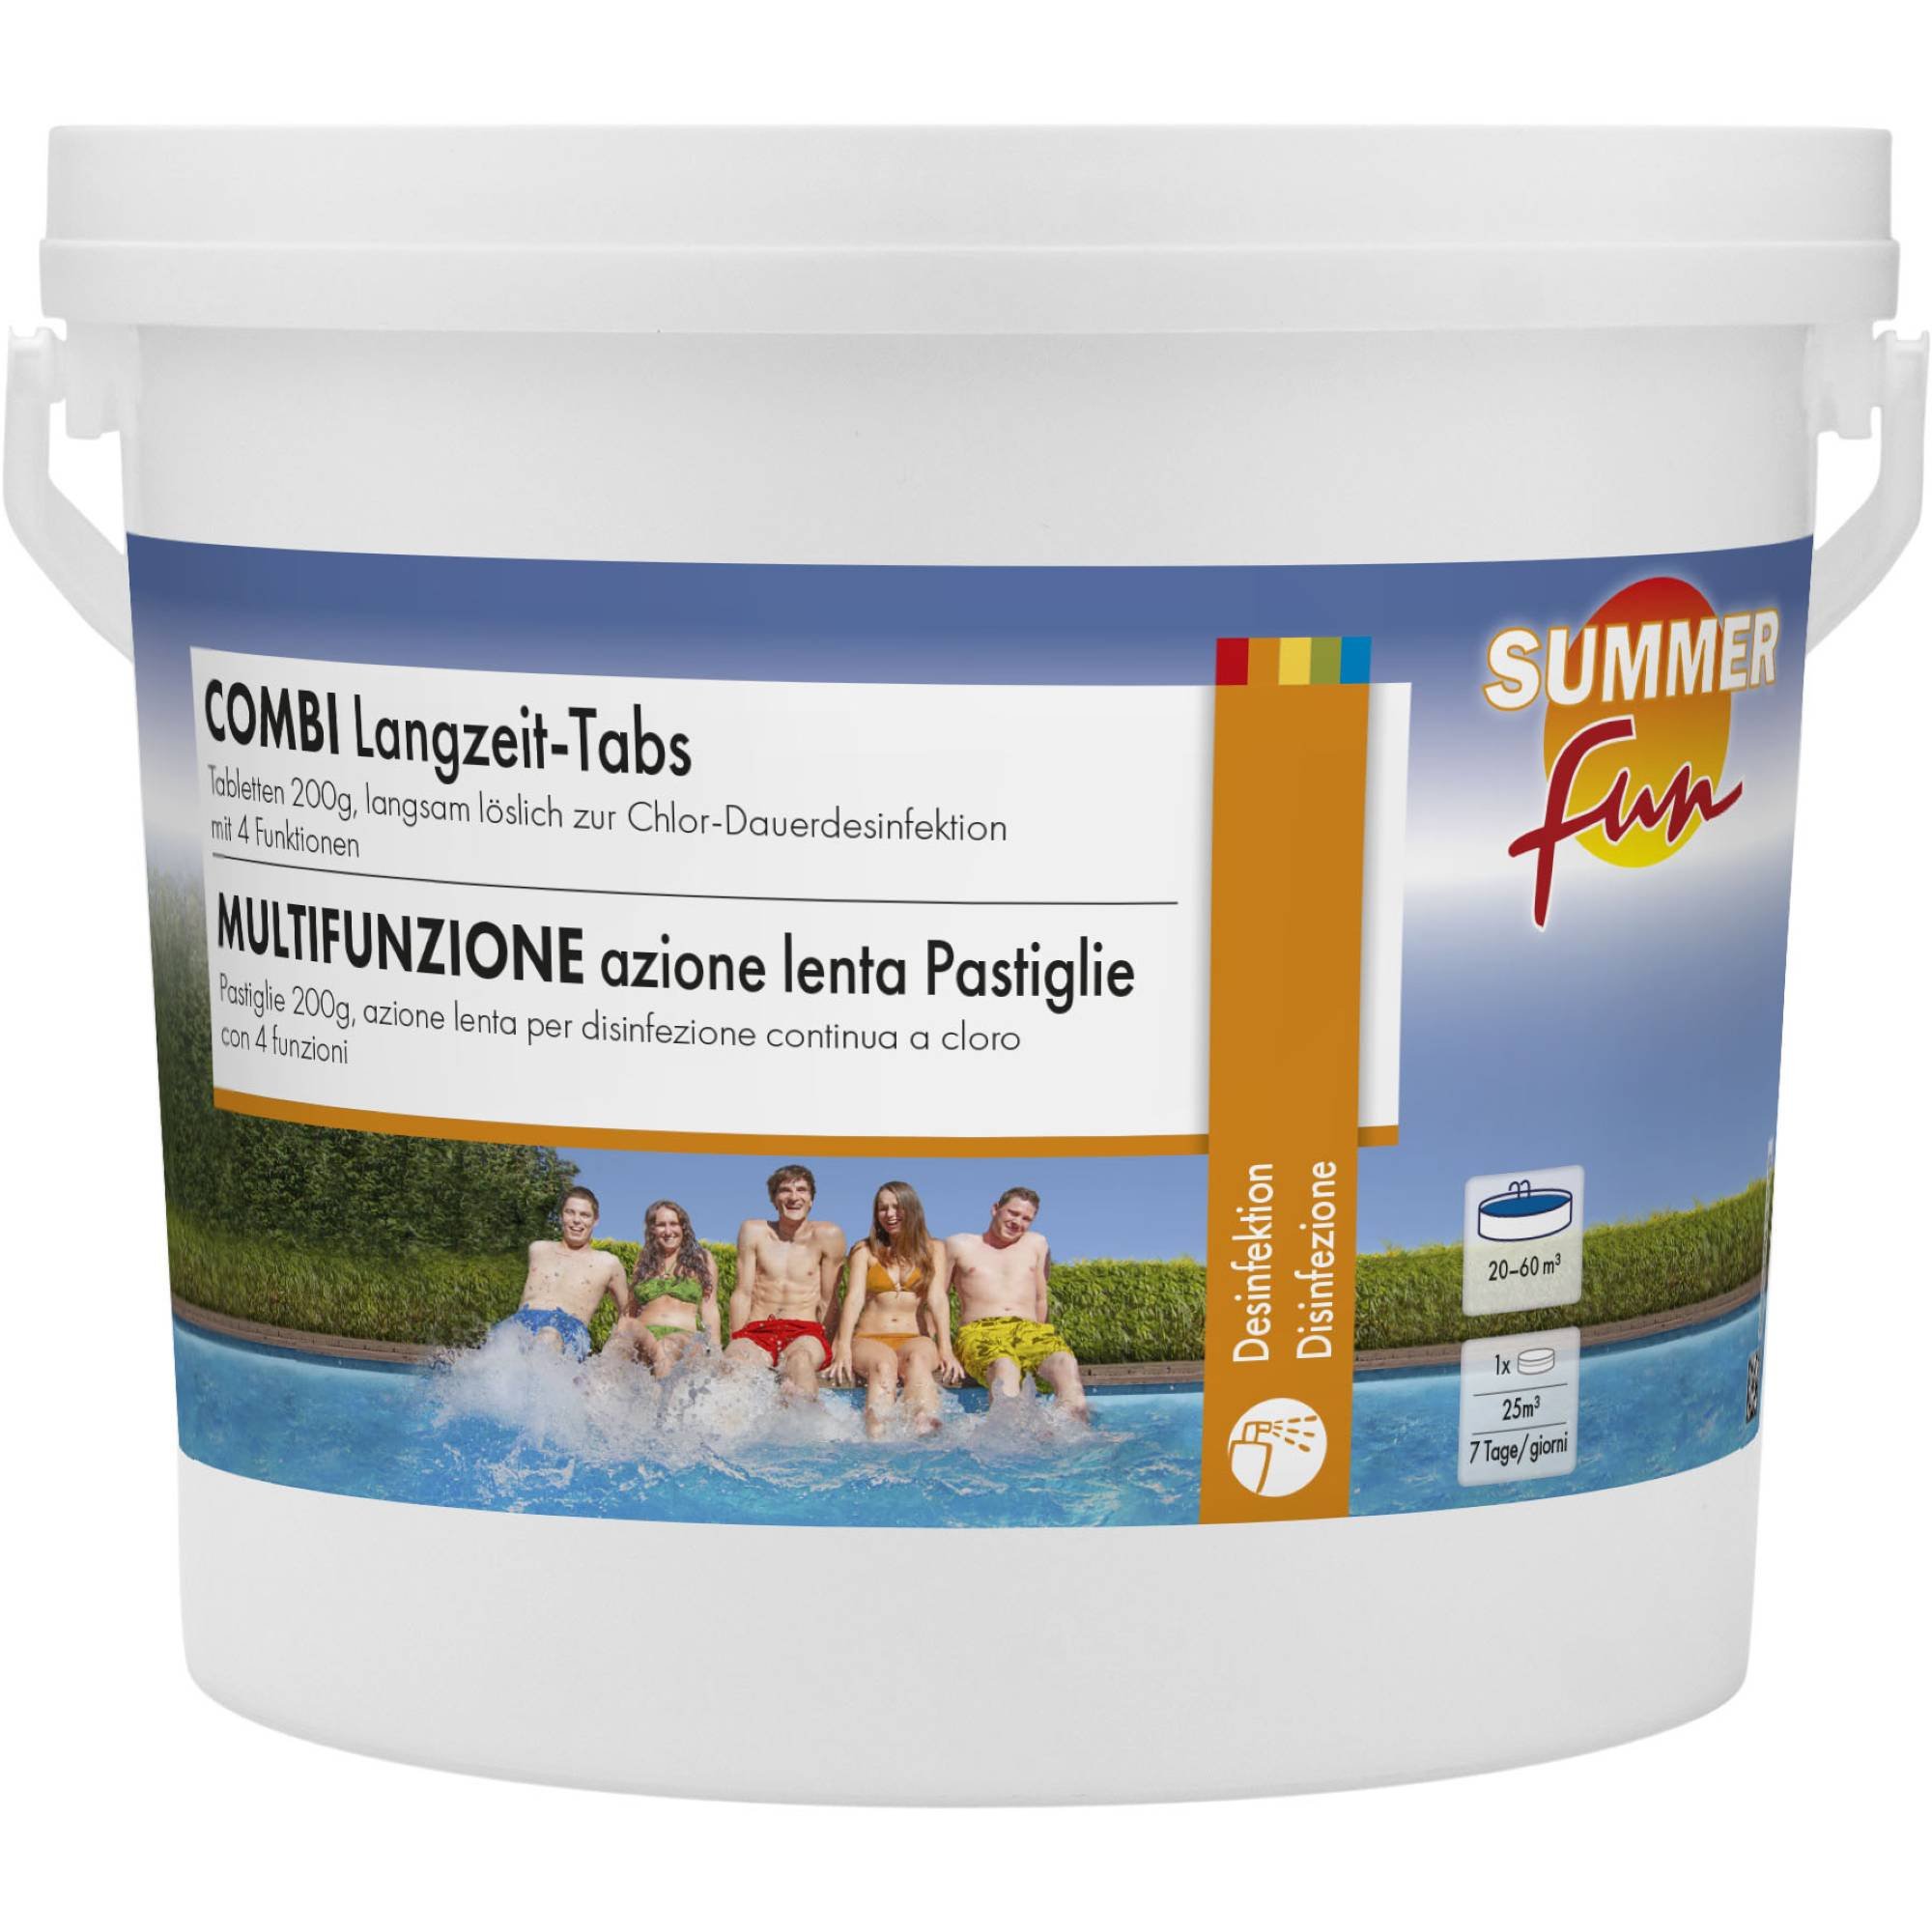 Summer Fun - Combi Langzeit-Tabs - 200g Tabletten, 2,4 kg